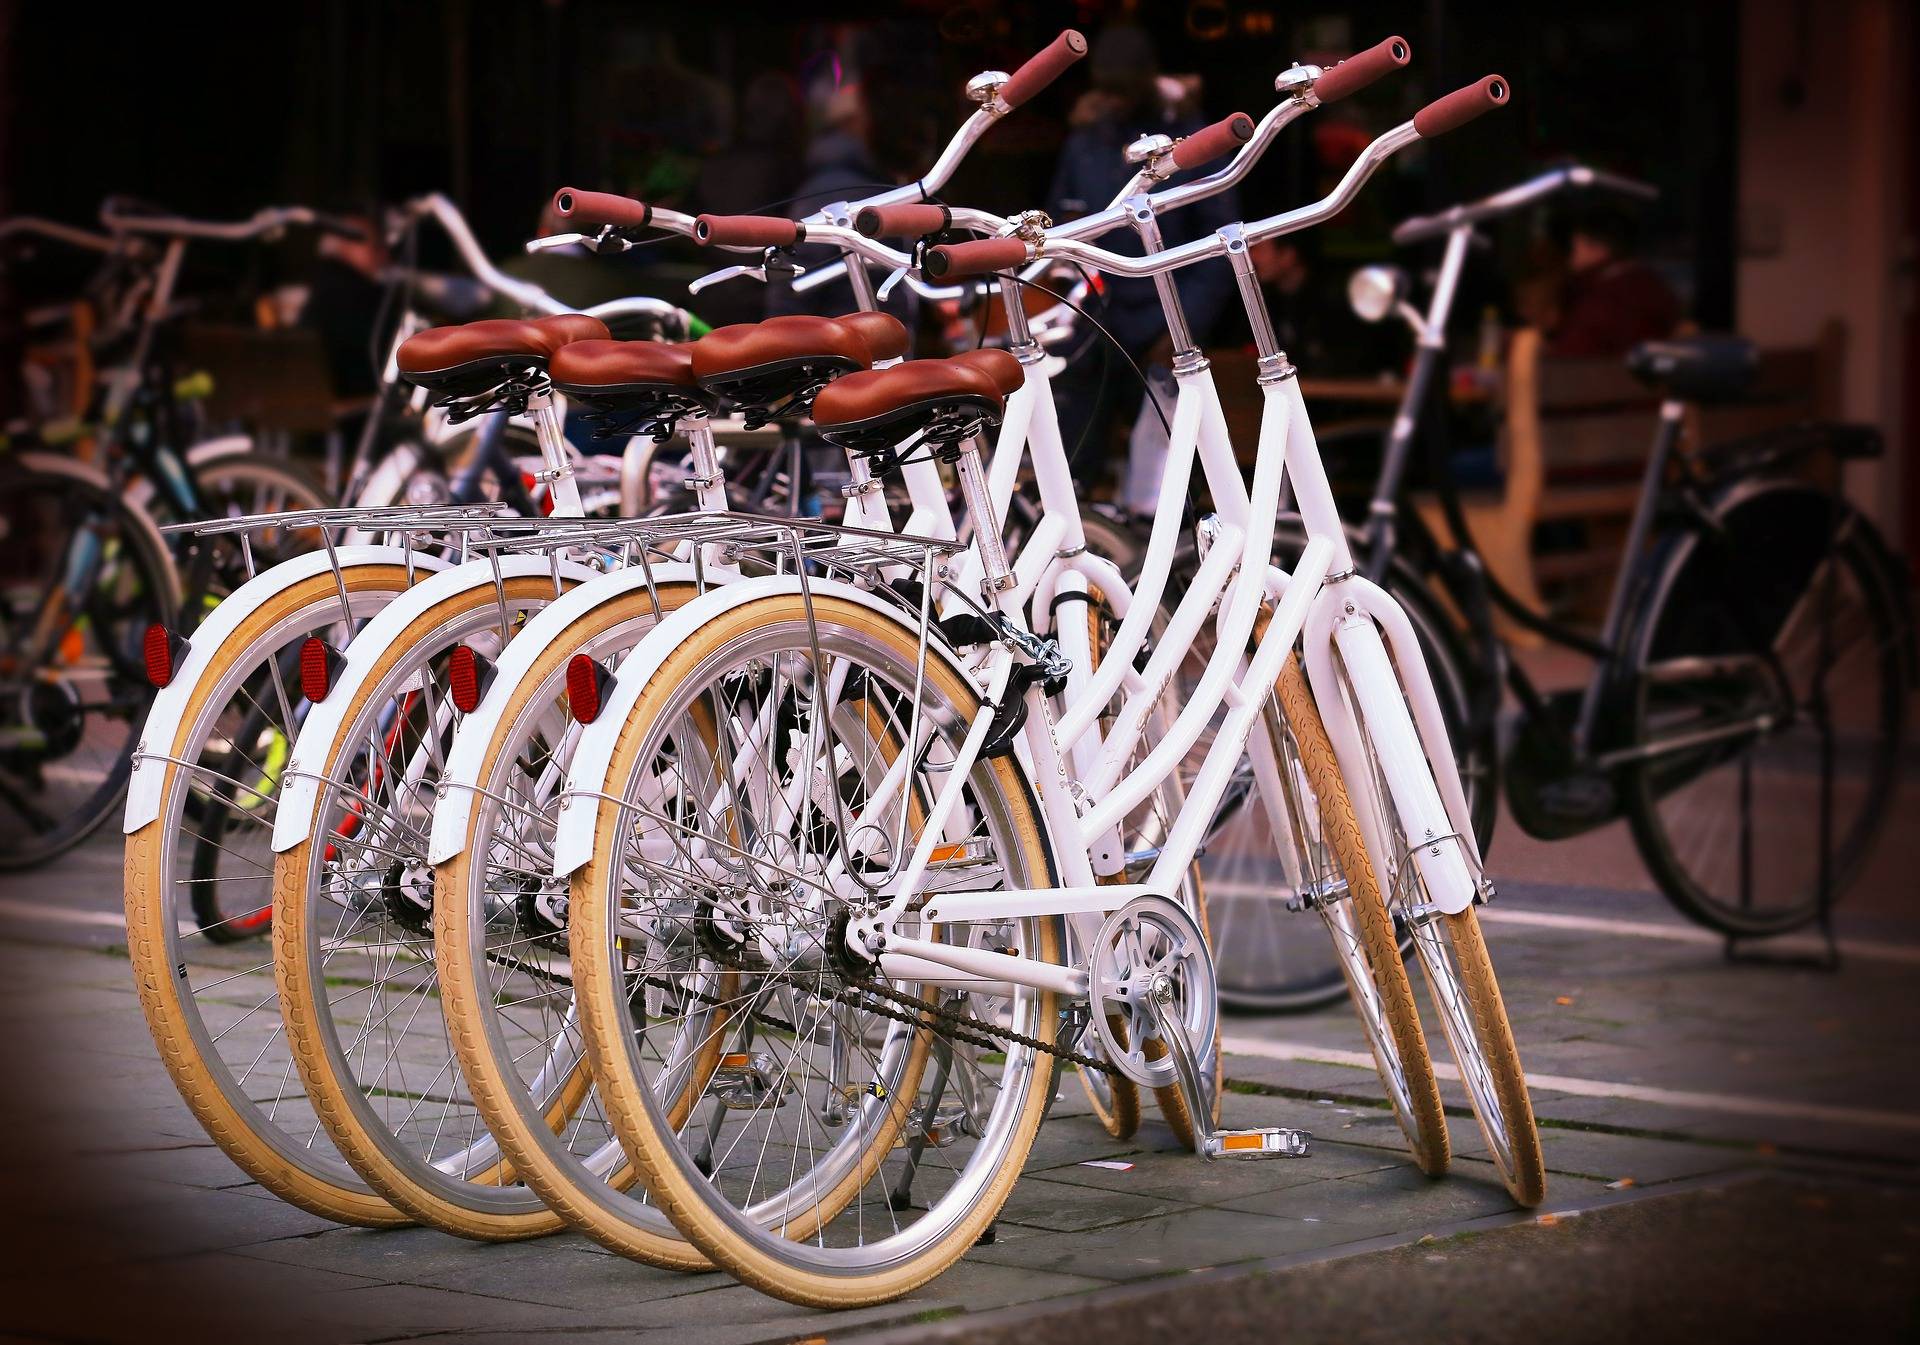 Za darmo wyregulują siodełko i nasmarują łańcuch, we wtorek ruszają miejskie „kontrole rowerowe”